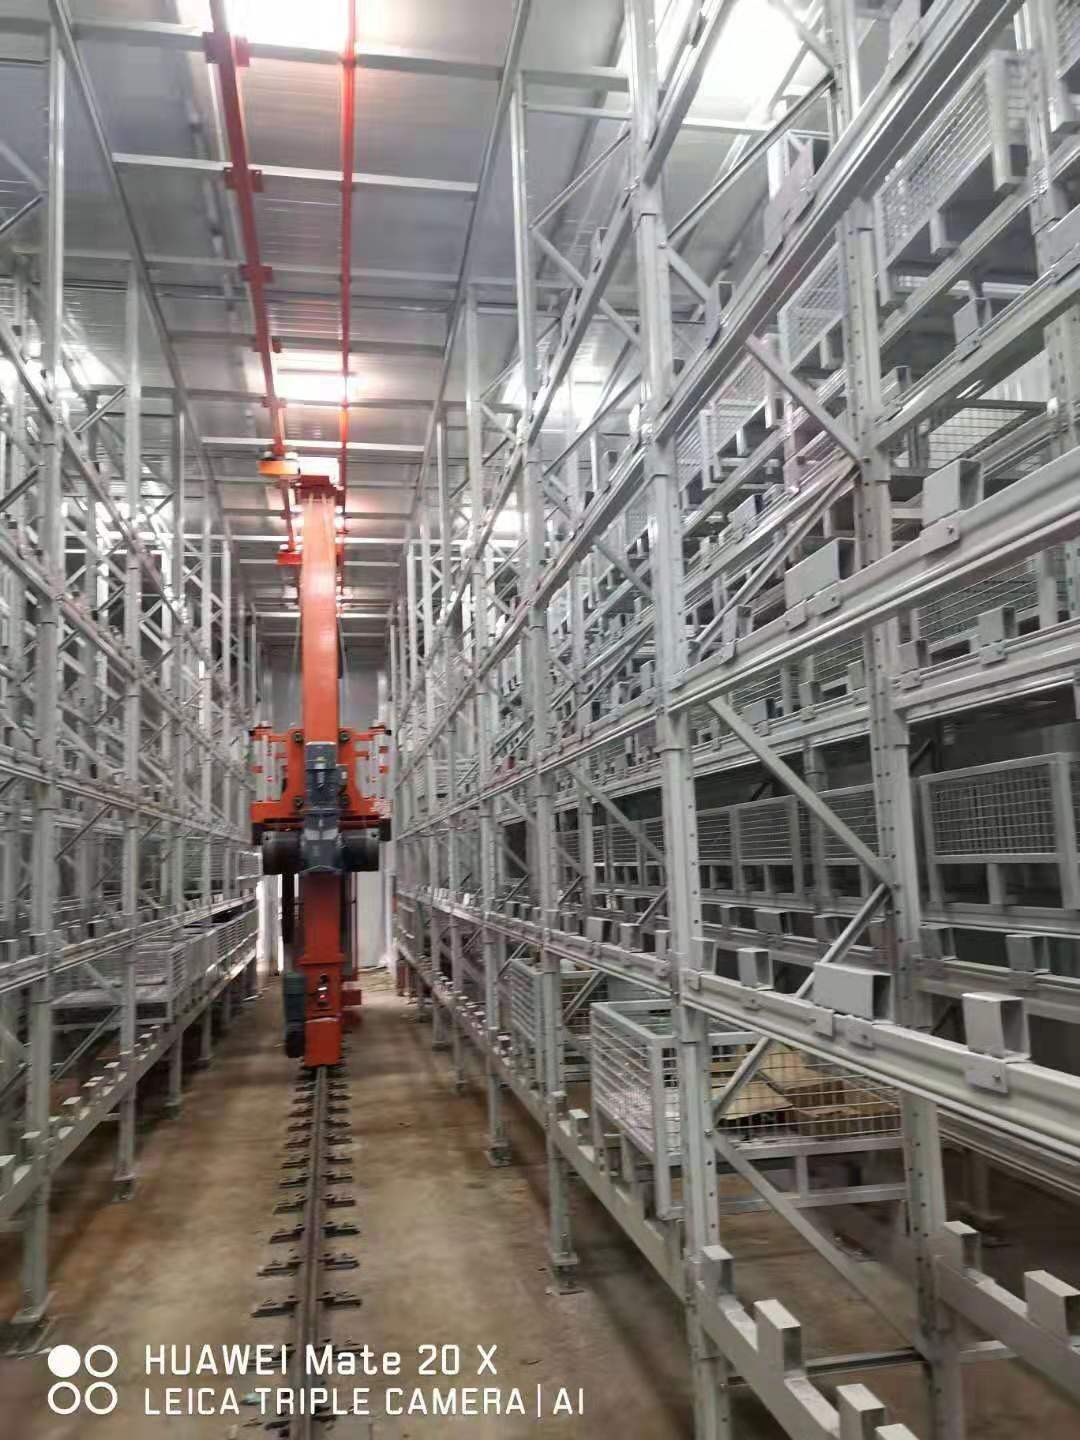 1重庆垂直循环仓库和AGV搬运车工业机器人自动化立体仓库智能分拣线垂直提升货柜